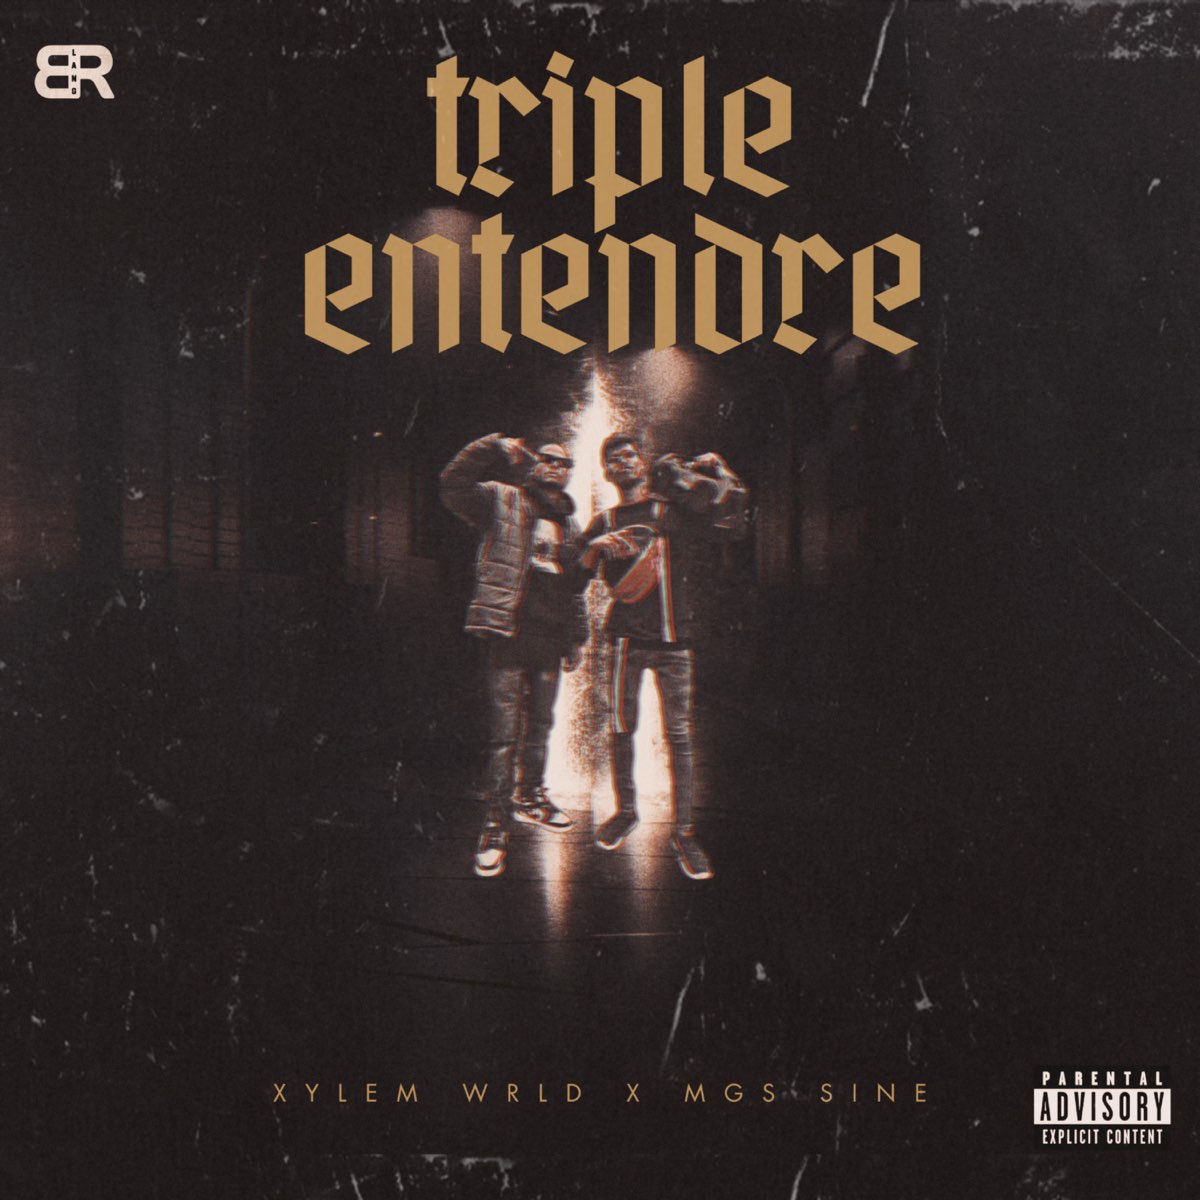 ‎Triple Entendre - Single by XyLem WRLD & MGS SINE on Apple Music